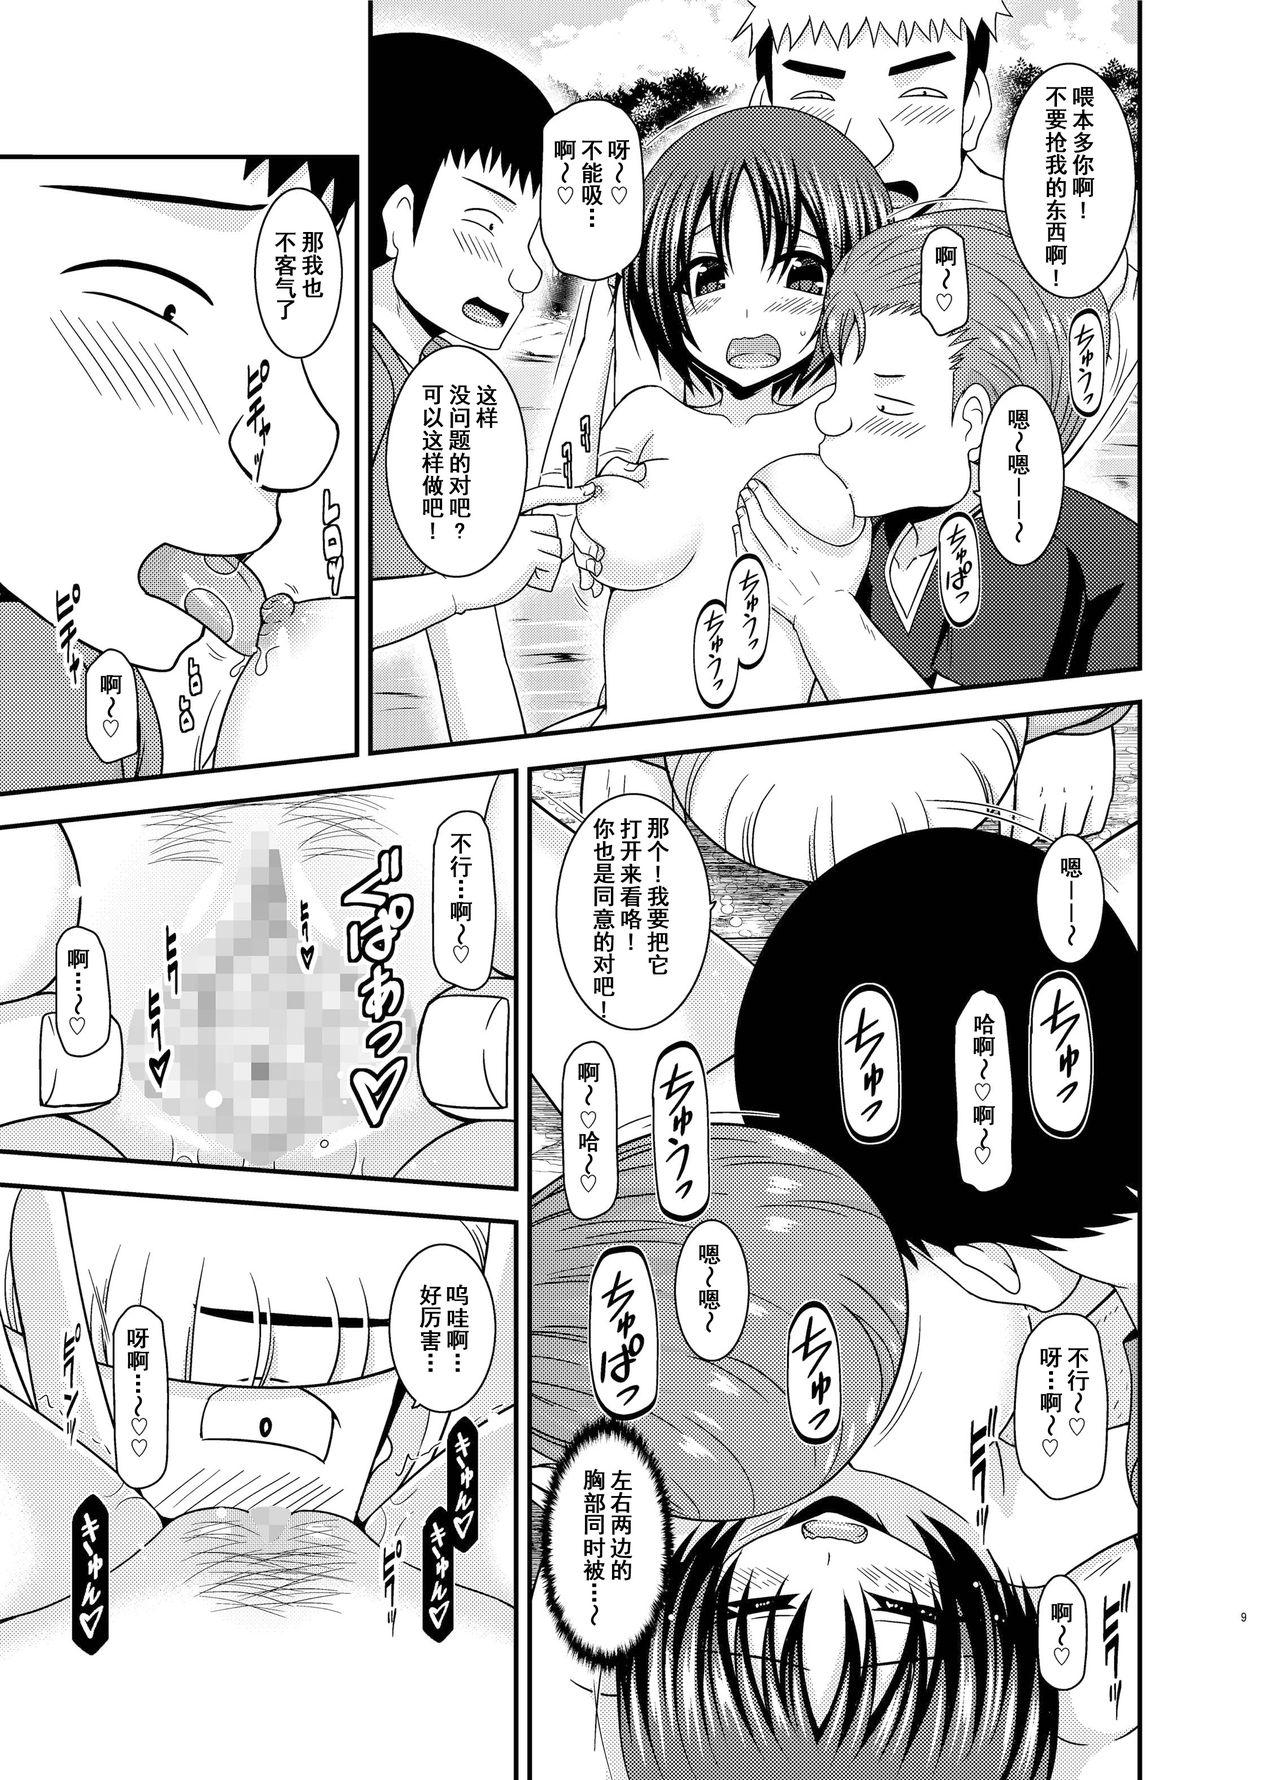 Morrita Roshutsu Shoujo Nikki 25 Satsume - Original Casting - Page 8